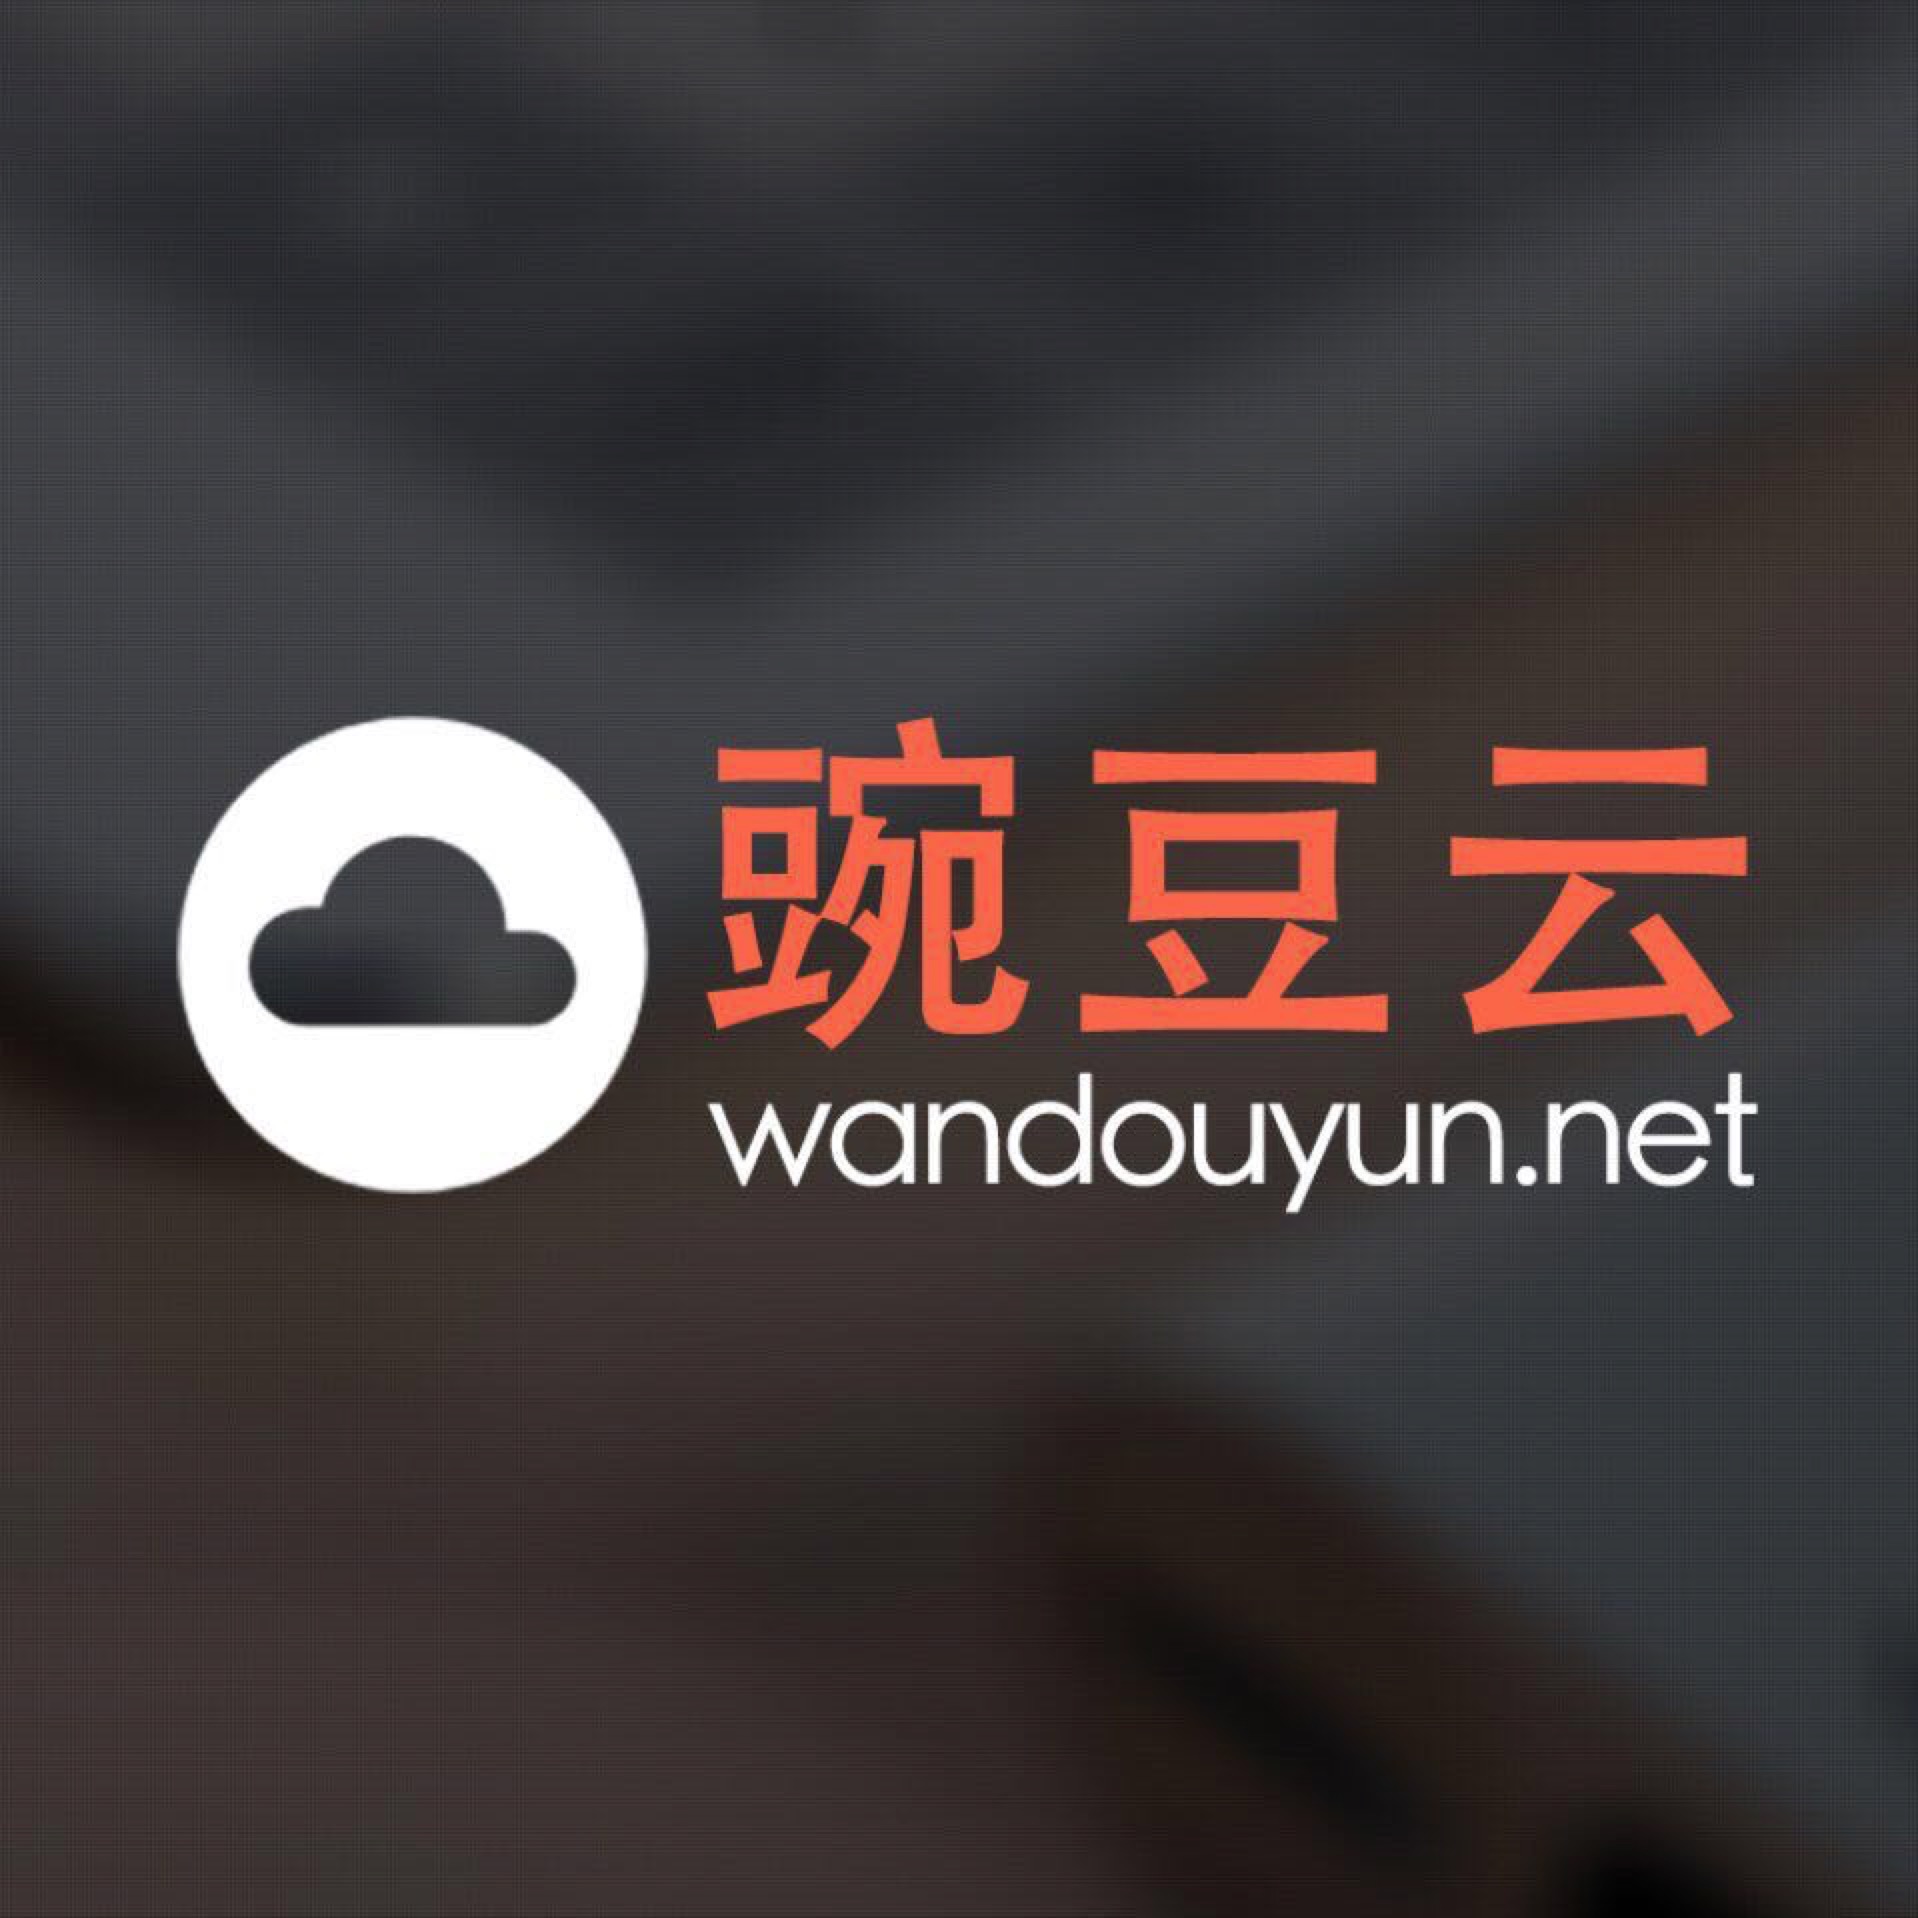 Wandouyun